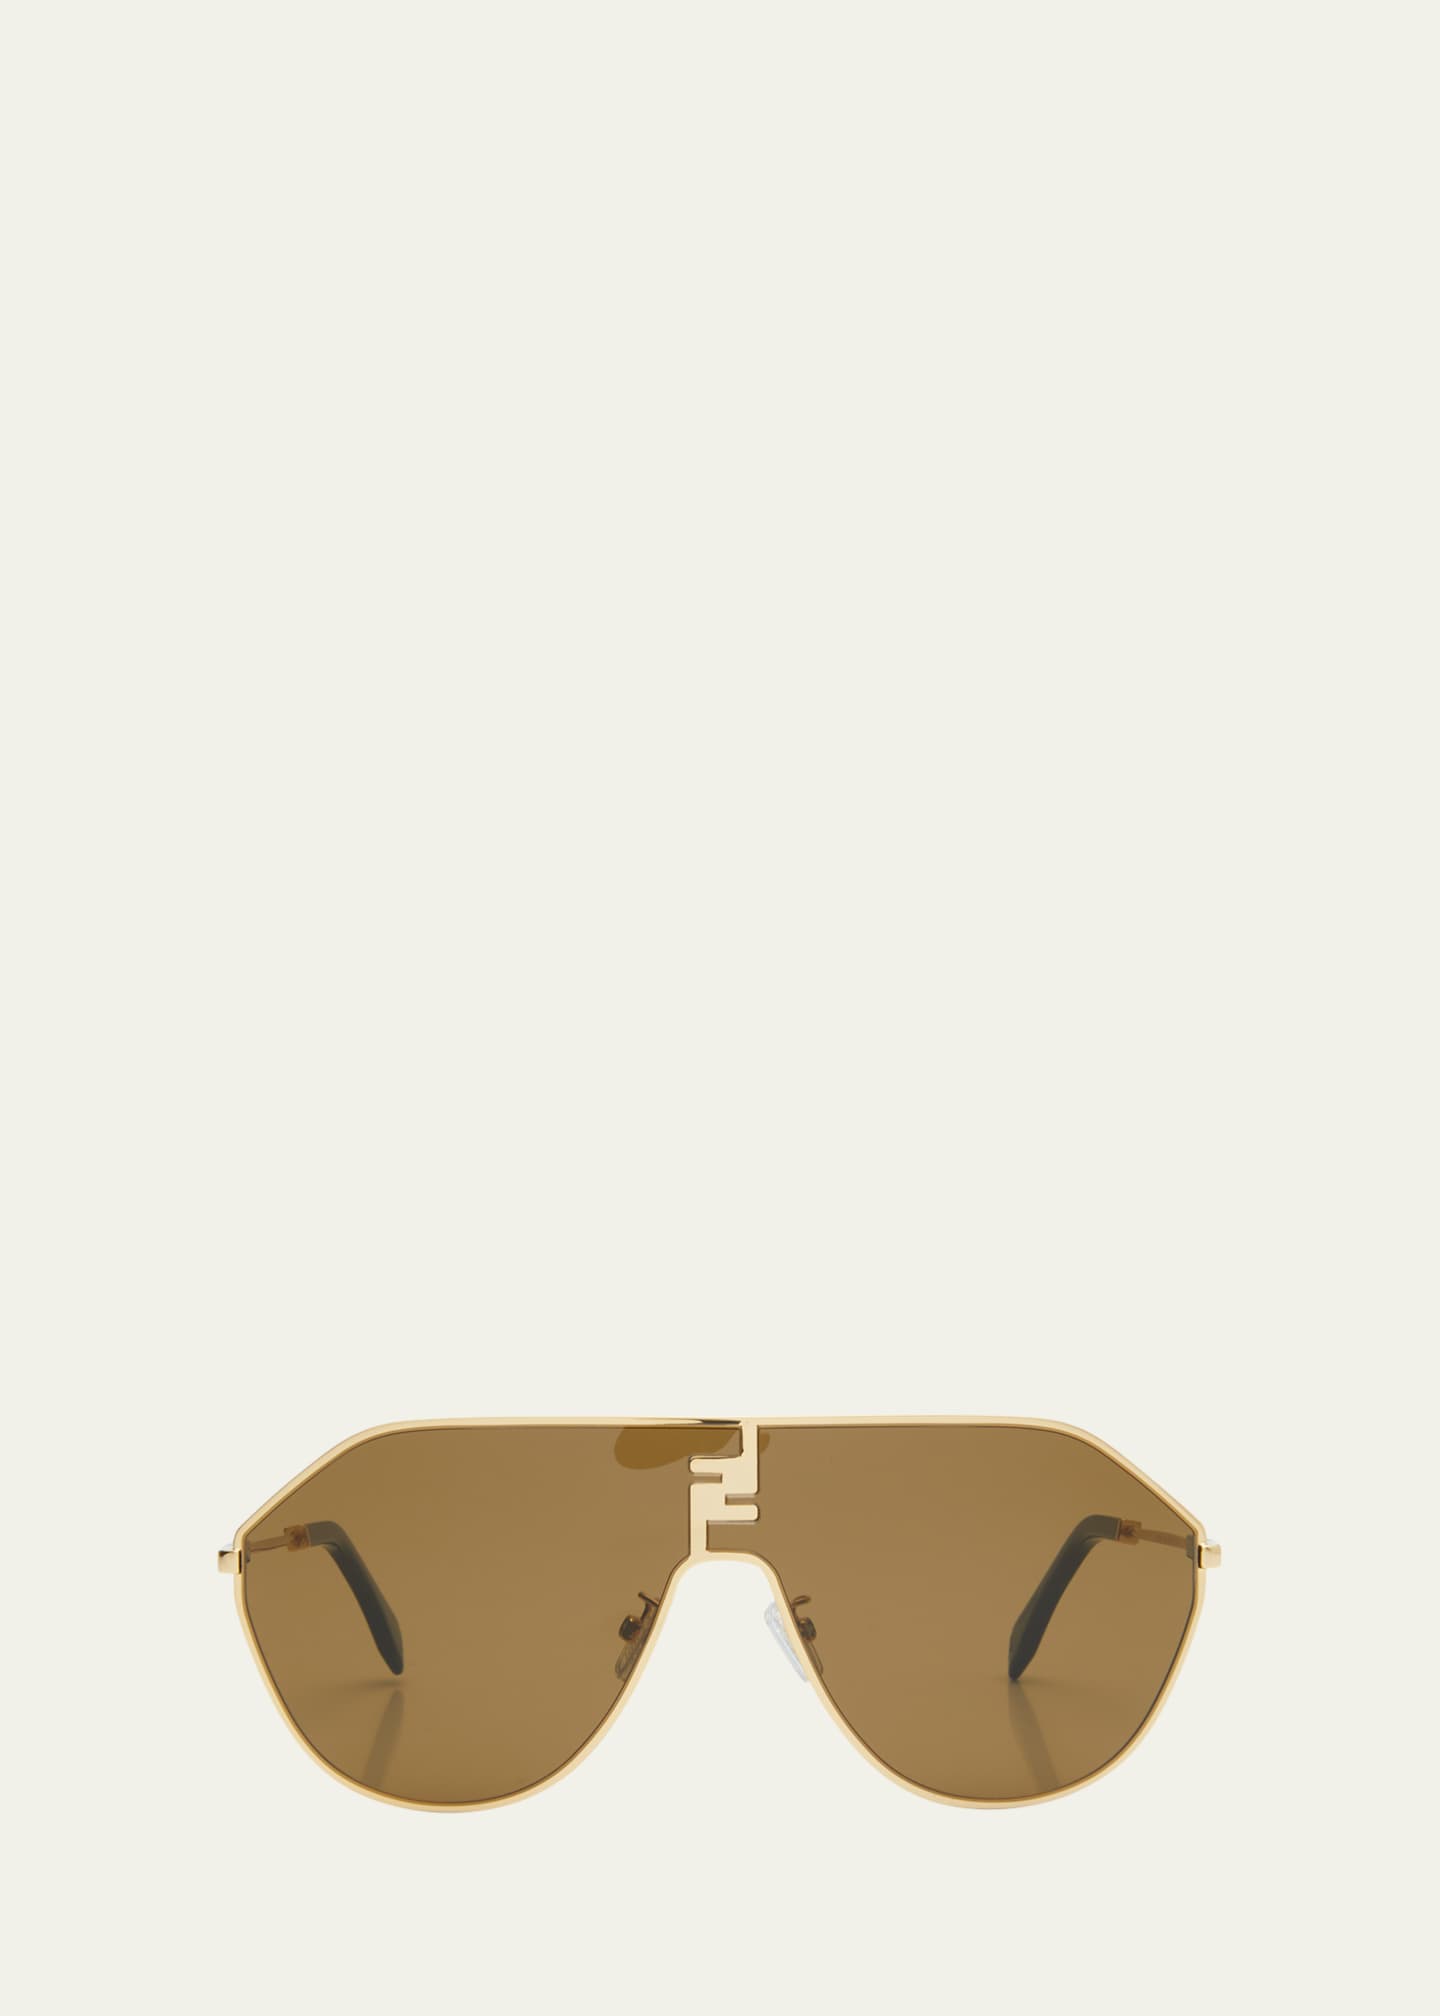 FF Match Aviator Sunglasses in Gold - Fendi